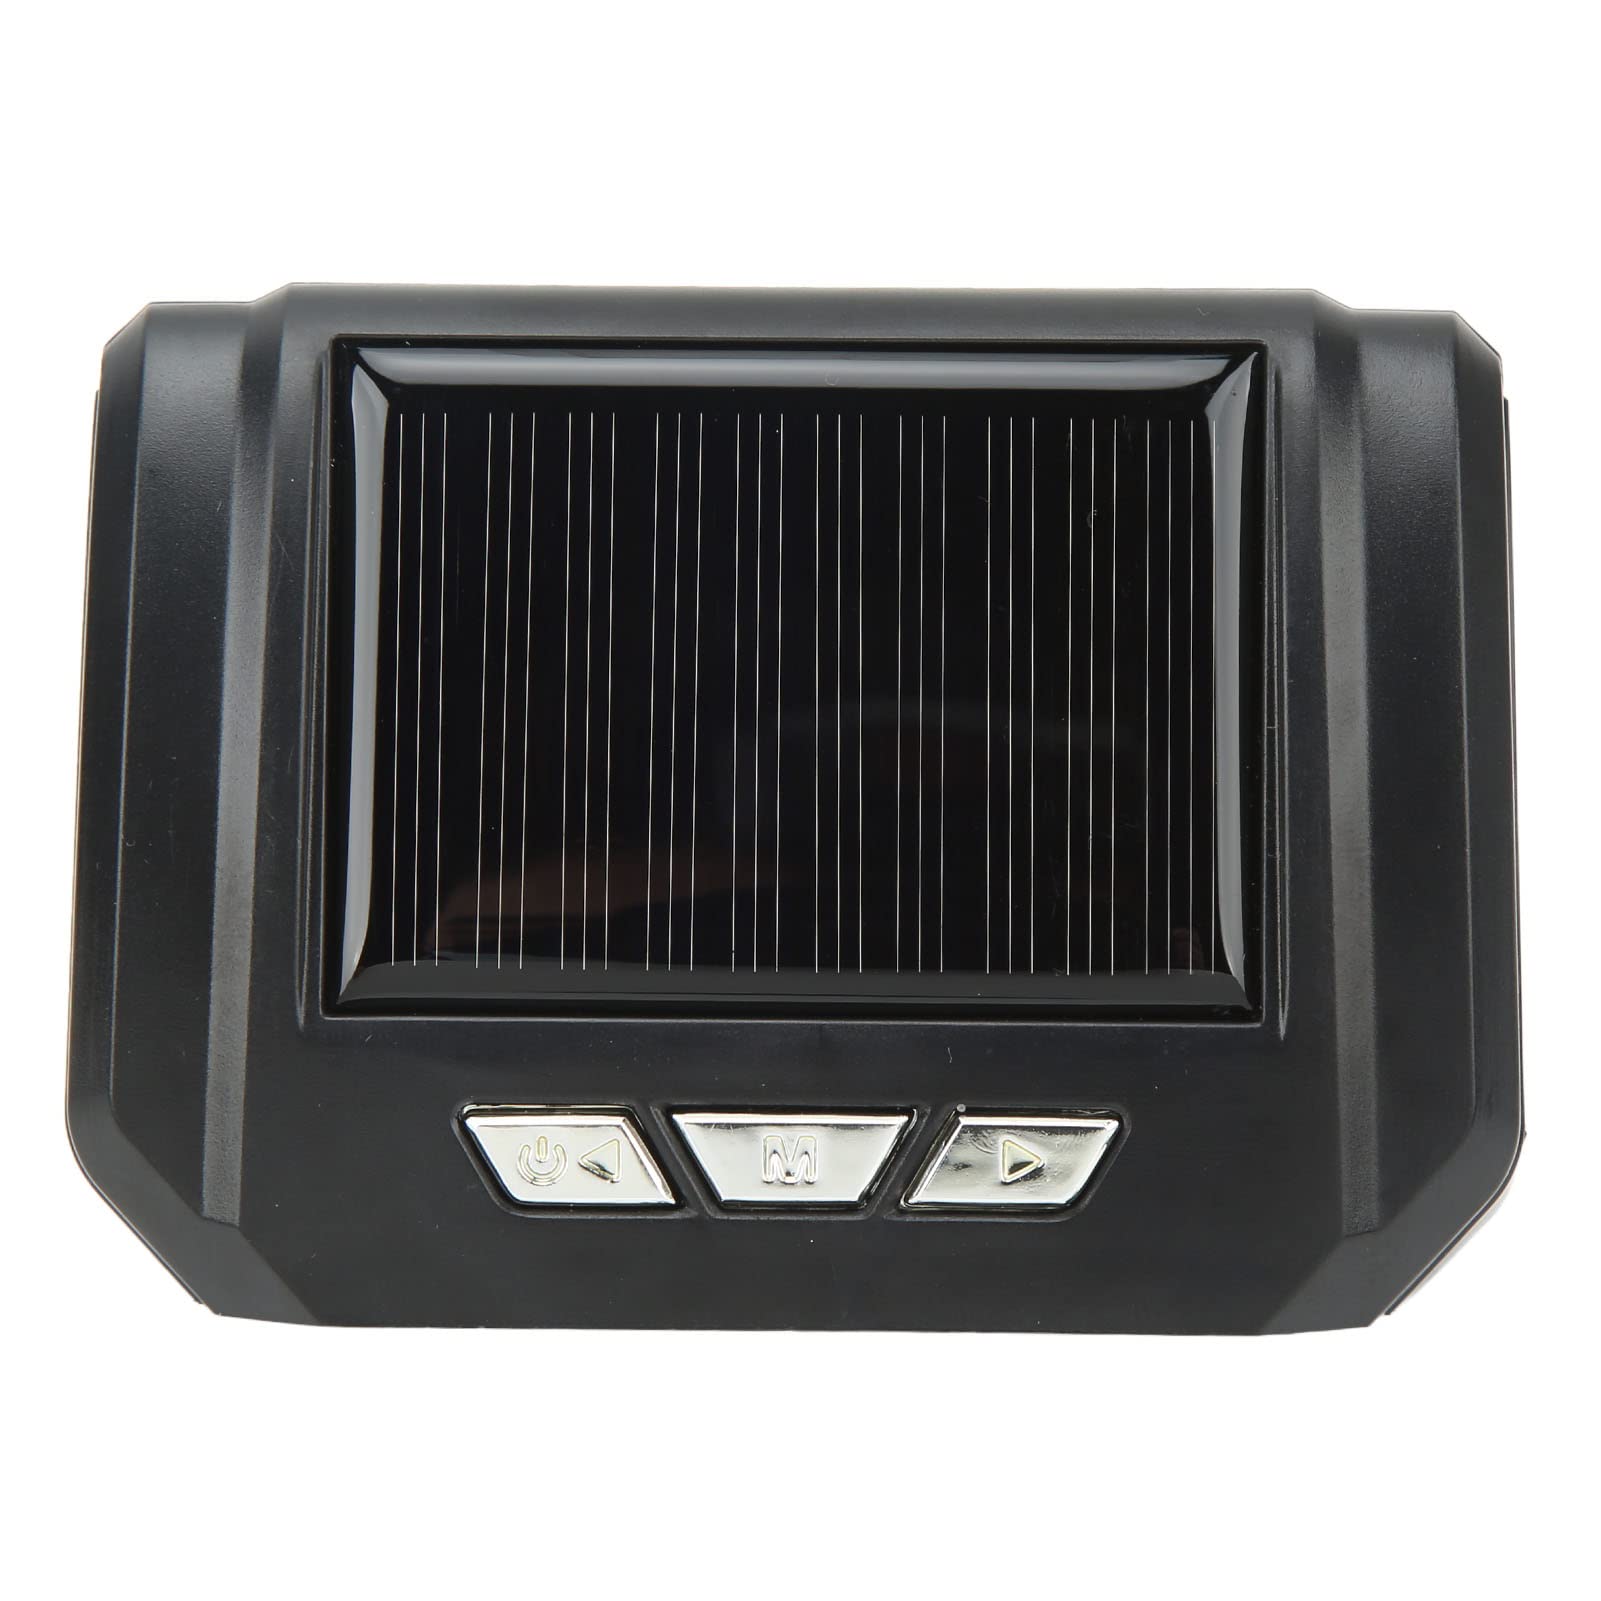 Wireless Solar Power TPMS, 6-Rad-LKW-Reifendruckkontrollsystem Wireless Solar Power TPMS-Monitor mit 6 Sensoren für Leichte LKW-Wohnmobile von Aramox